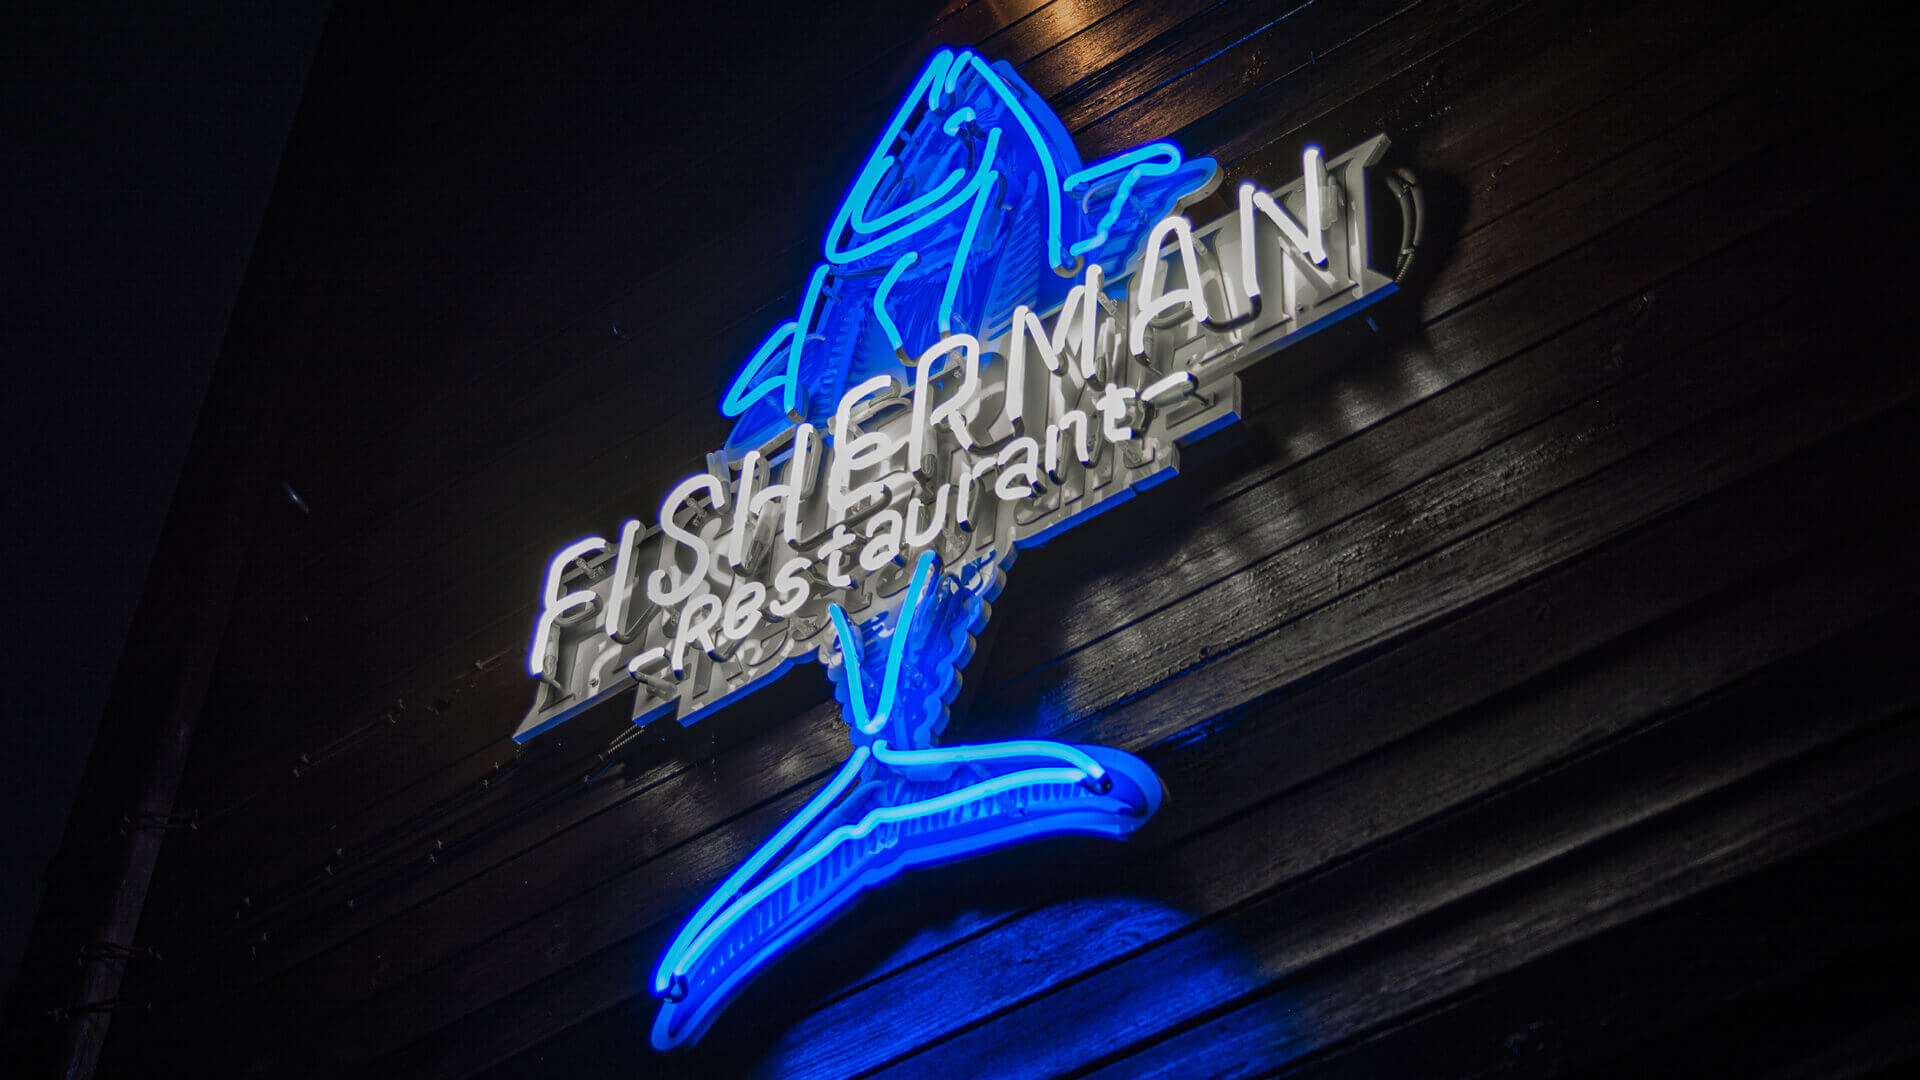 fisherman fisher man - fisherman-restauracja-neon-niebieski-bialy-neon-na-scianie-restauracji-neon-na-deskach-neon-na-wysokosci-podswietlany-ryba-neon-przy-wejsciu-sopot (28).jpg.jpg